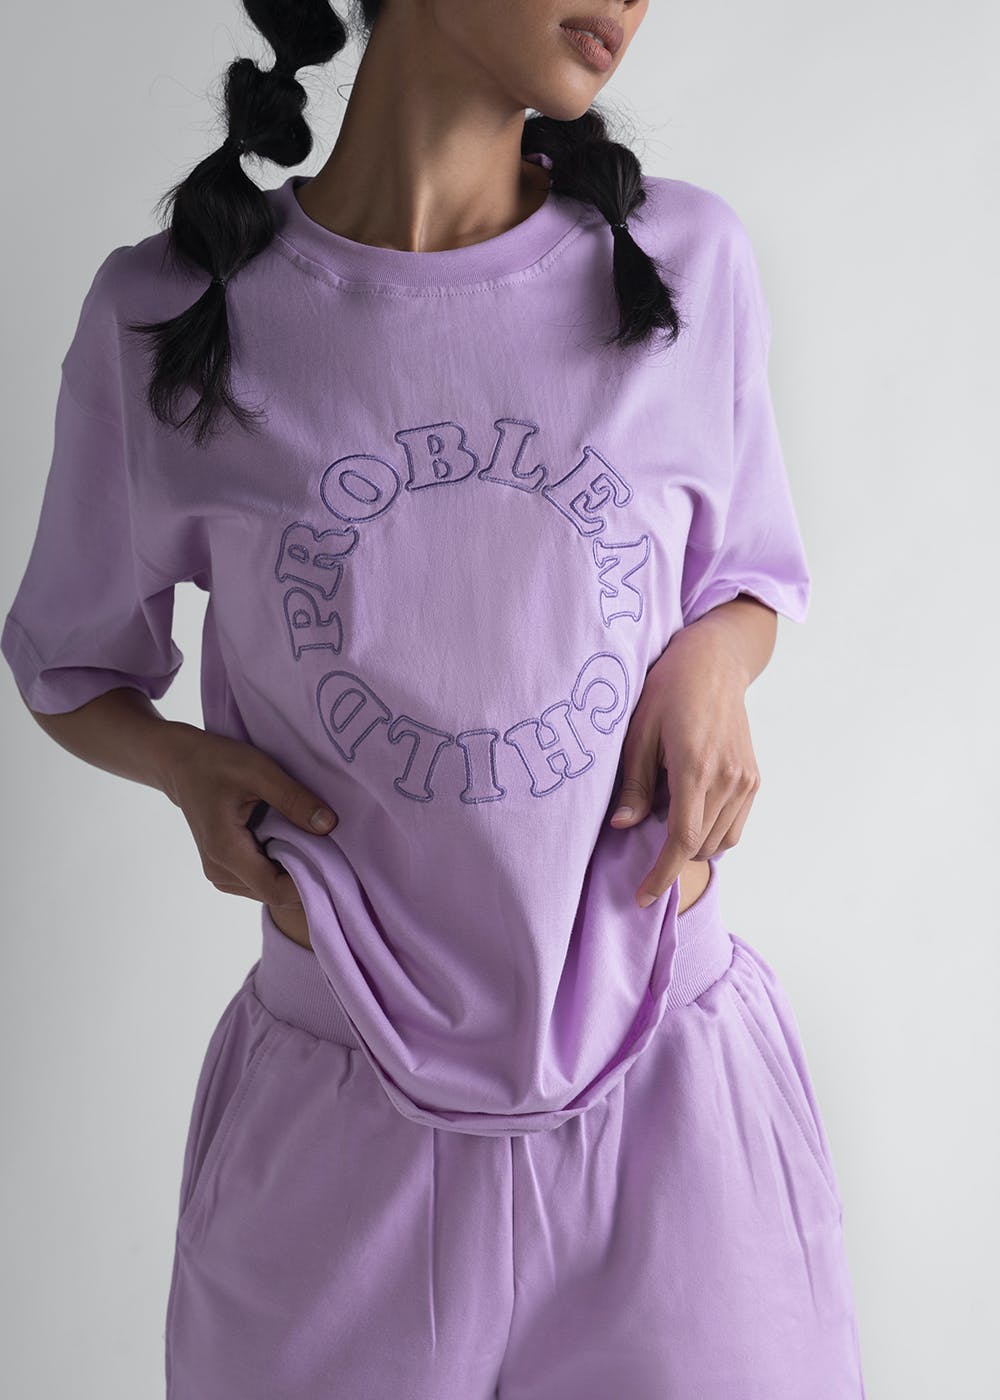 Get Basic Lavender Solid T-Shirt at ₹ 1600 | LBB Shop